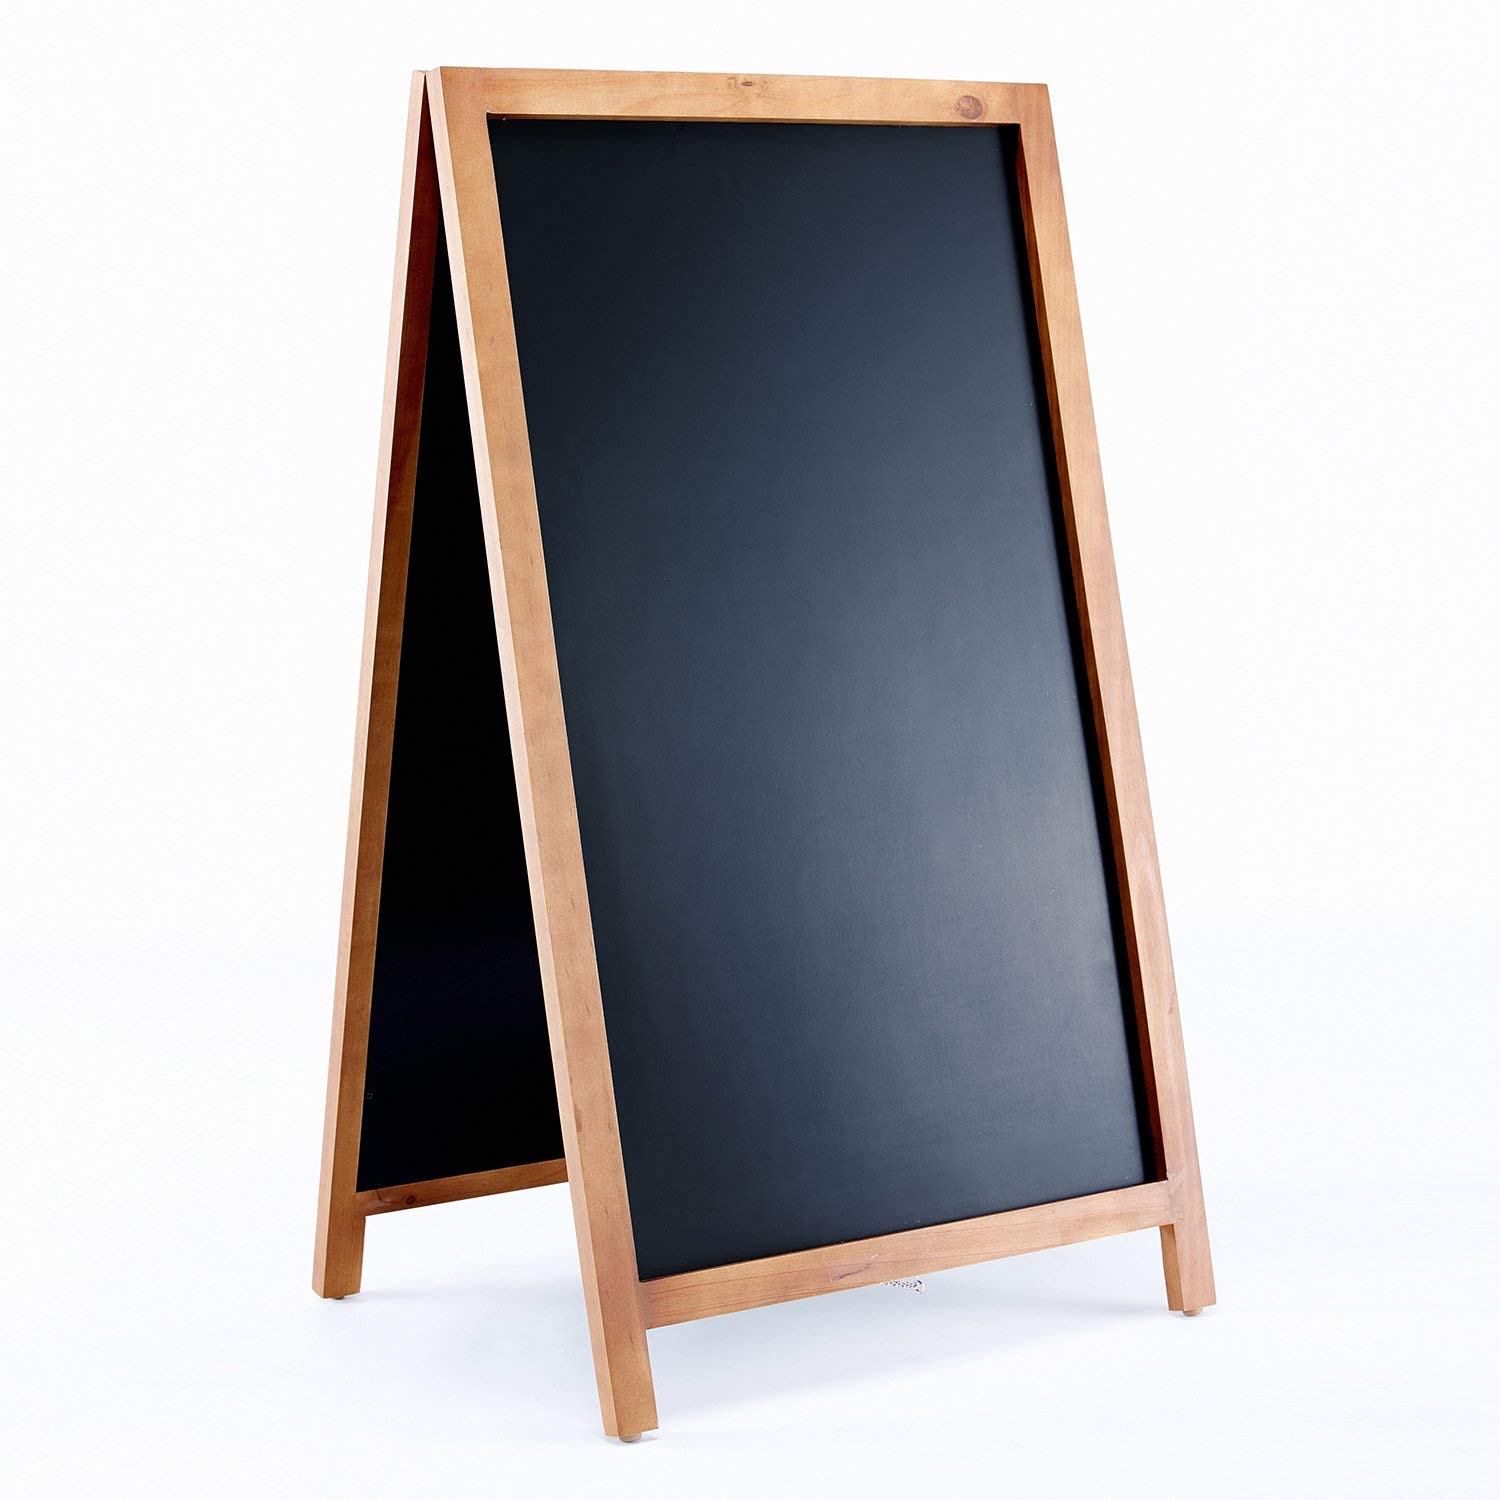 Amazon.com : Vintage Wooden Magnetic A Frame Chalkboard Sign for ...